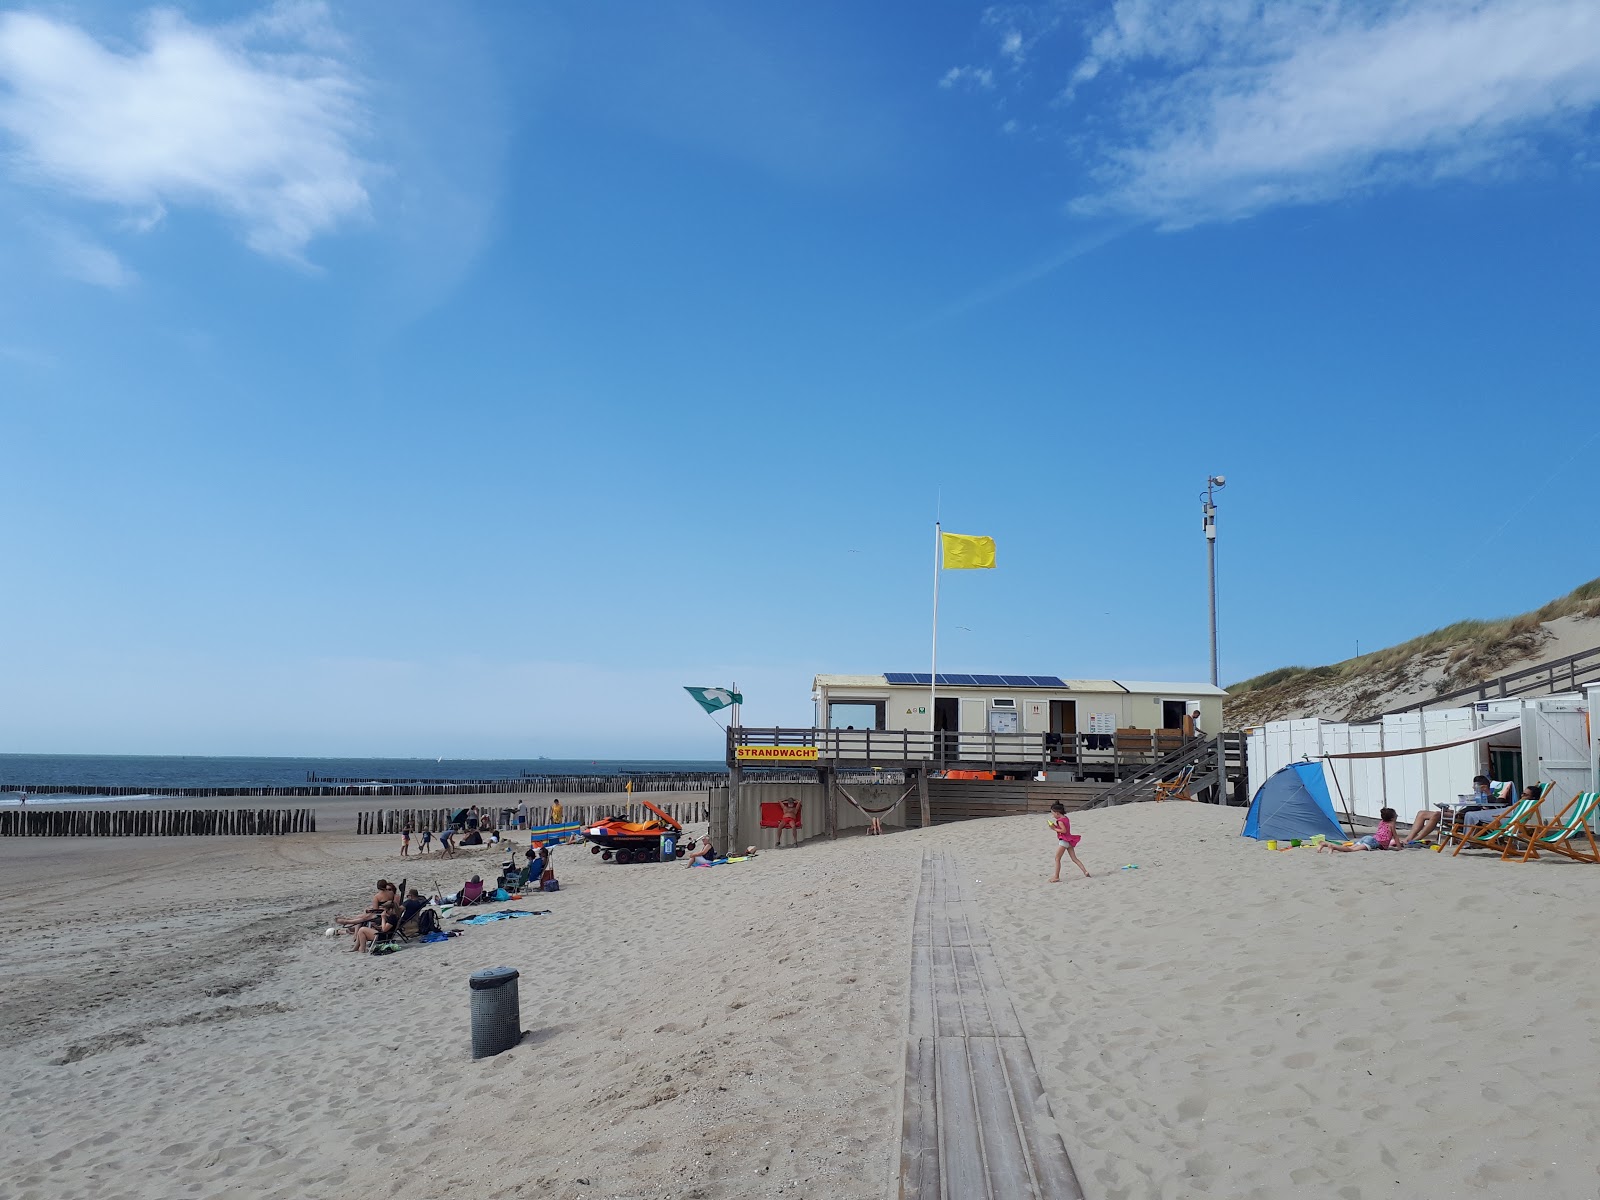 Foto de Joossesweg beach - lugar popular entre los conocedores del relax